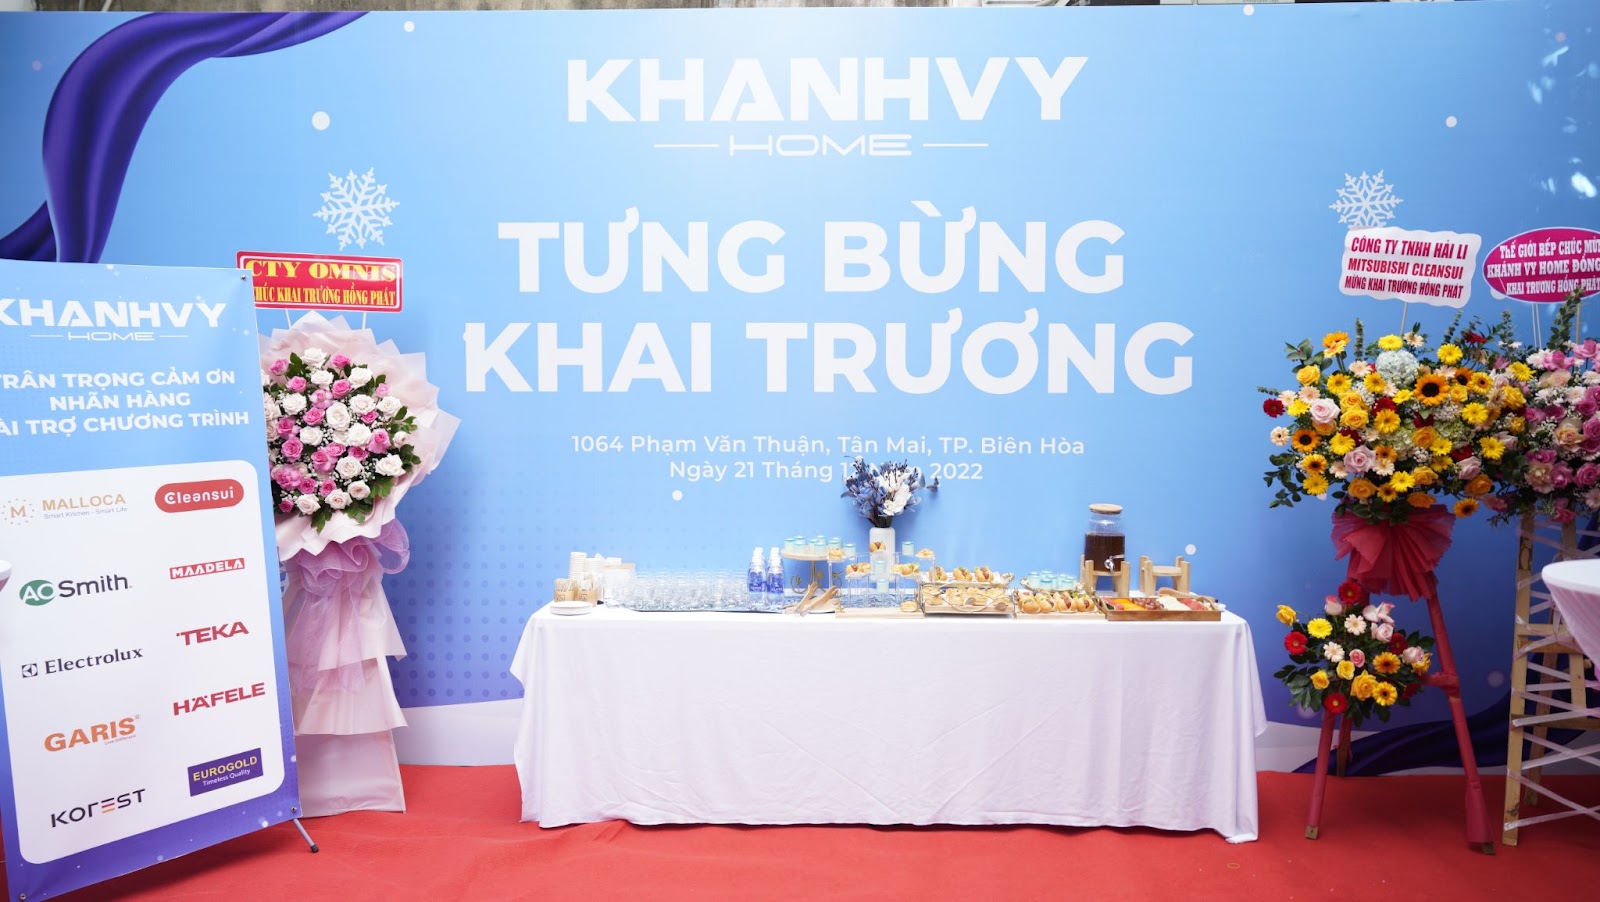 Khánh Vy Home tưng bừng khai trương showroom mới tại 1064 Phạm Văn Thuận, Phường Tân Mai, Tp. Biên Hoà